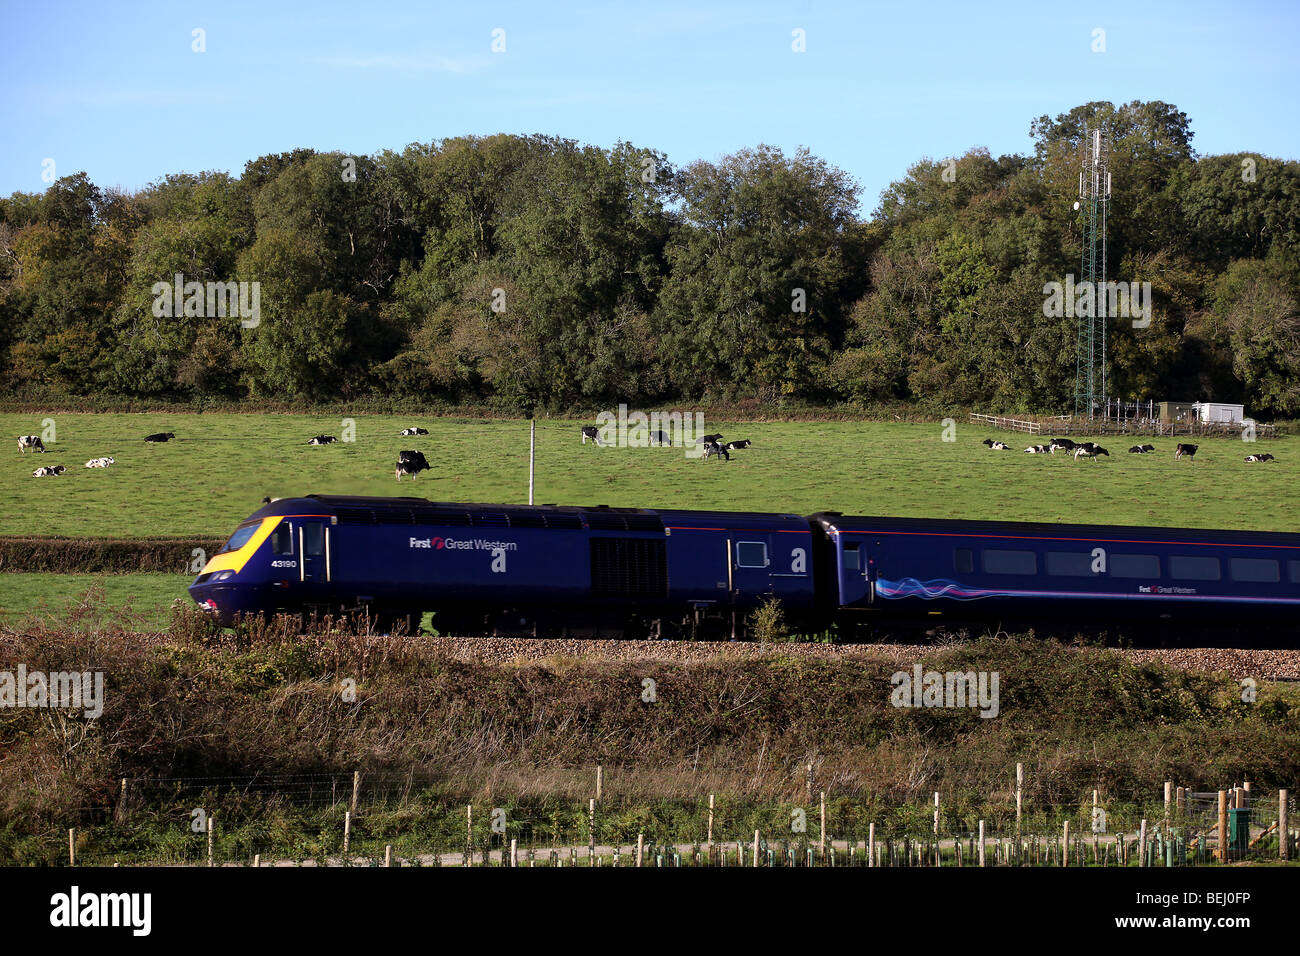 Picture by Mark Passmore. 10.10.2009. Ein Zug geht durch ein Feld voller Kühe mit einem Handy-Mast im Hintergrund. Stockfoto